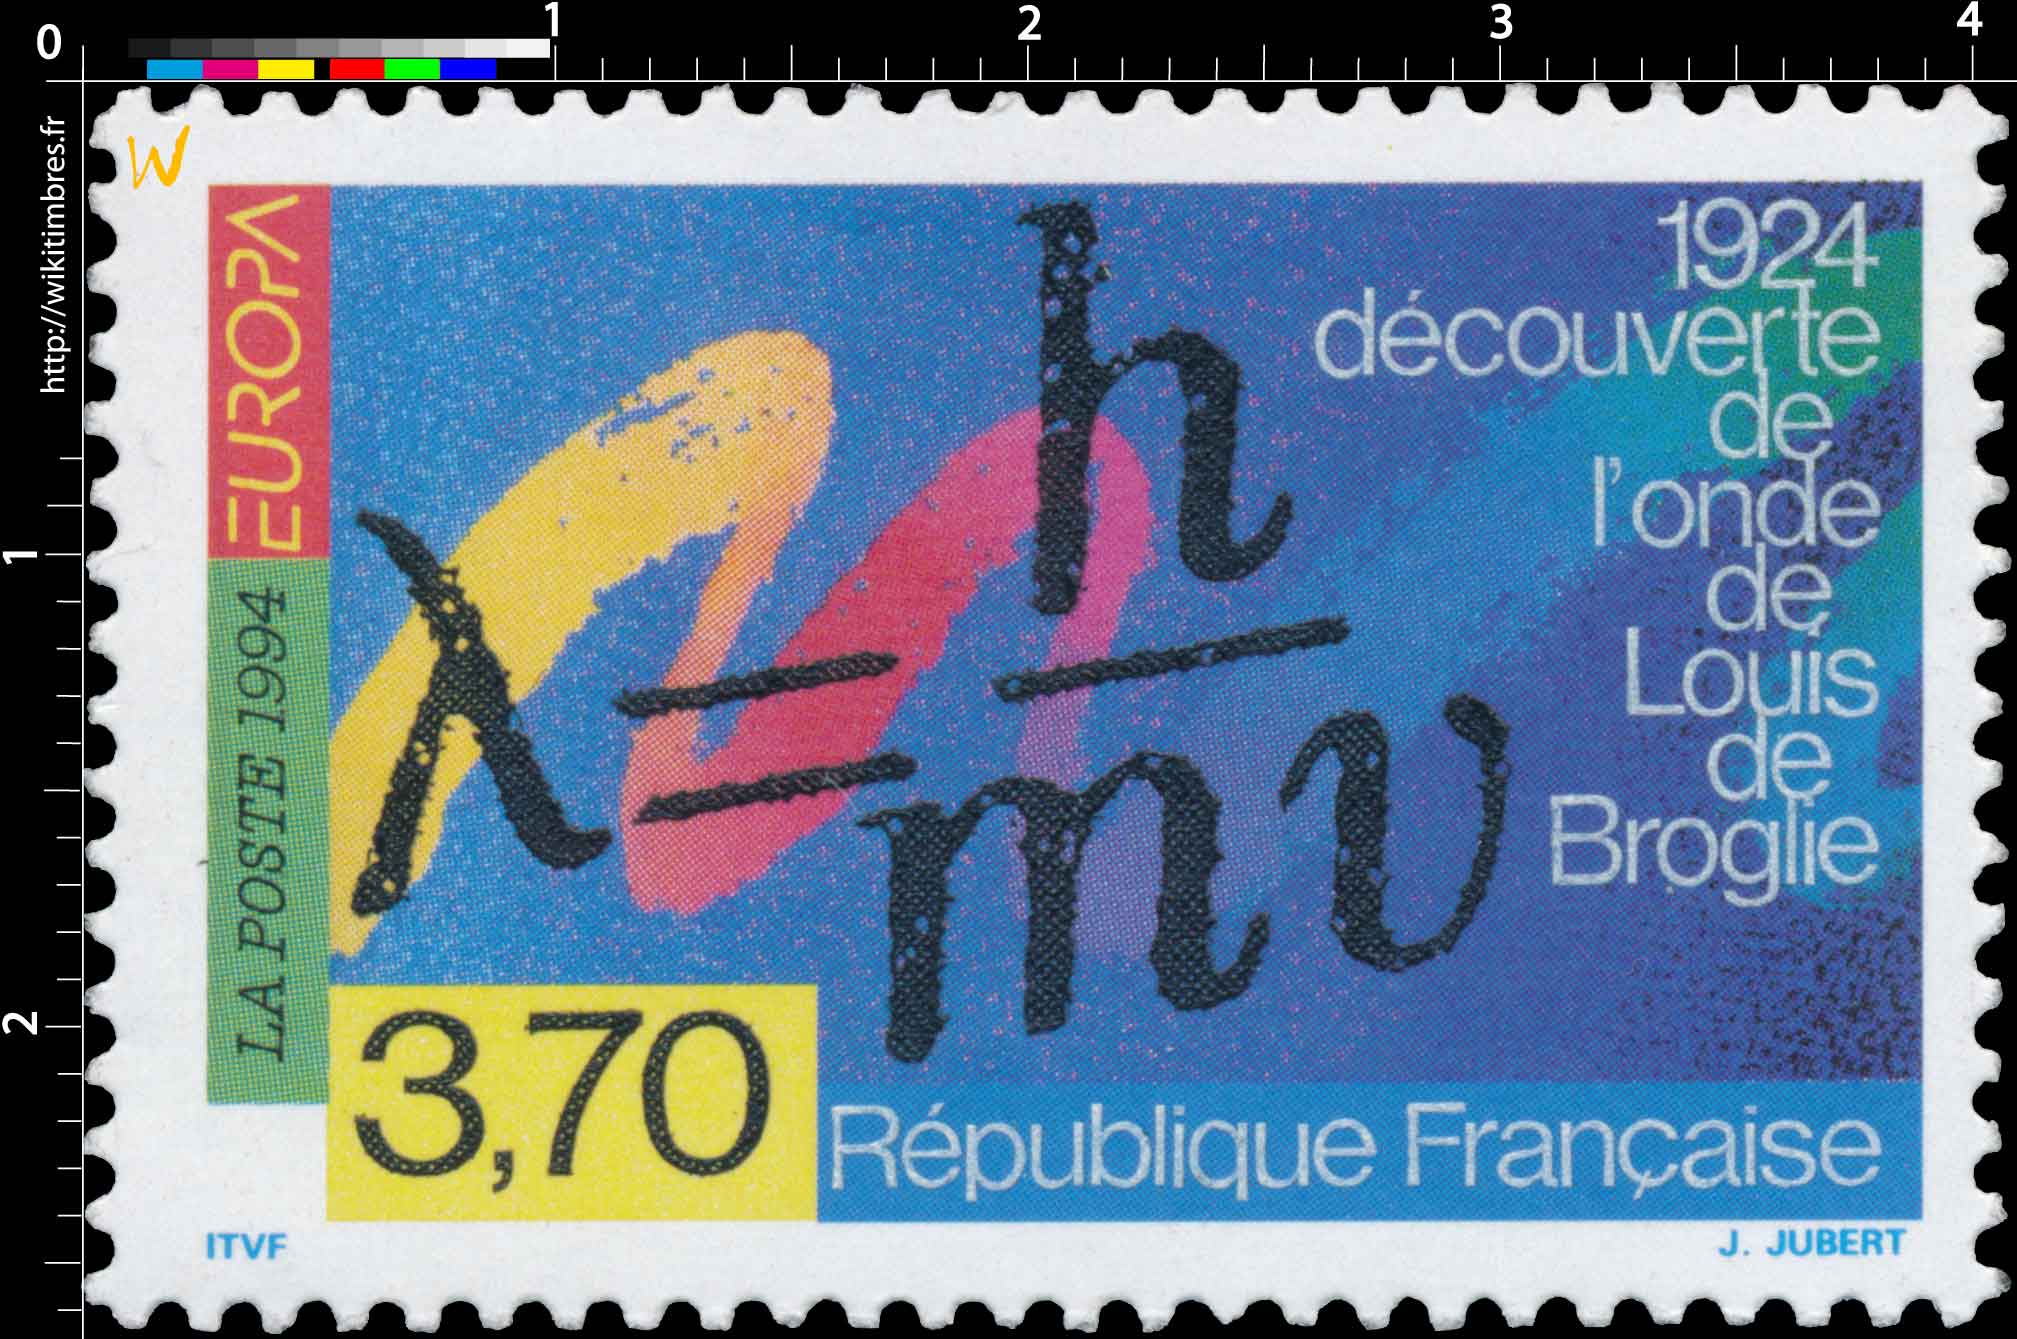 1994 EUROPA 1924 découverte de l'onde de Louis de Broglie